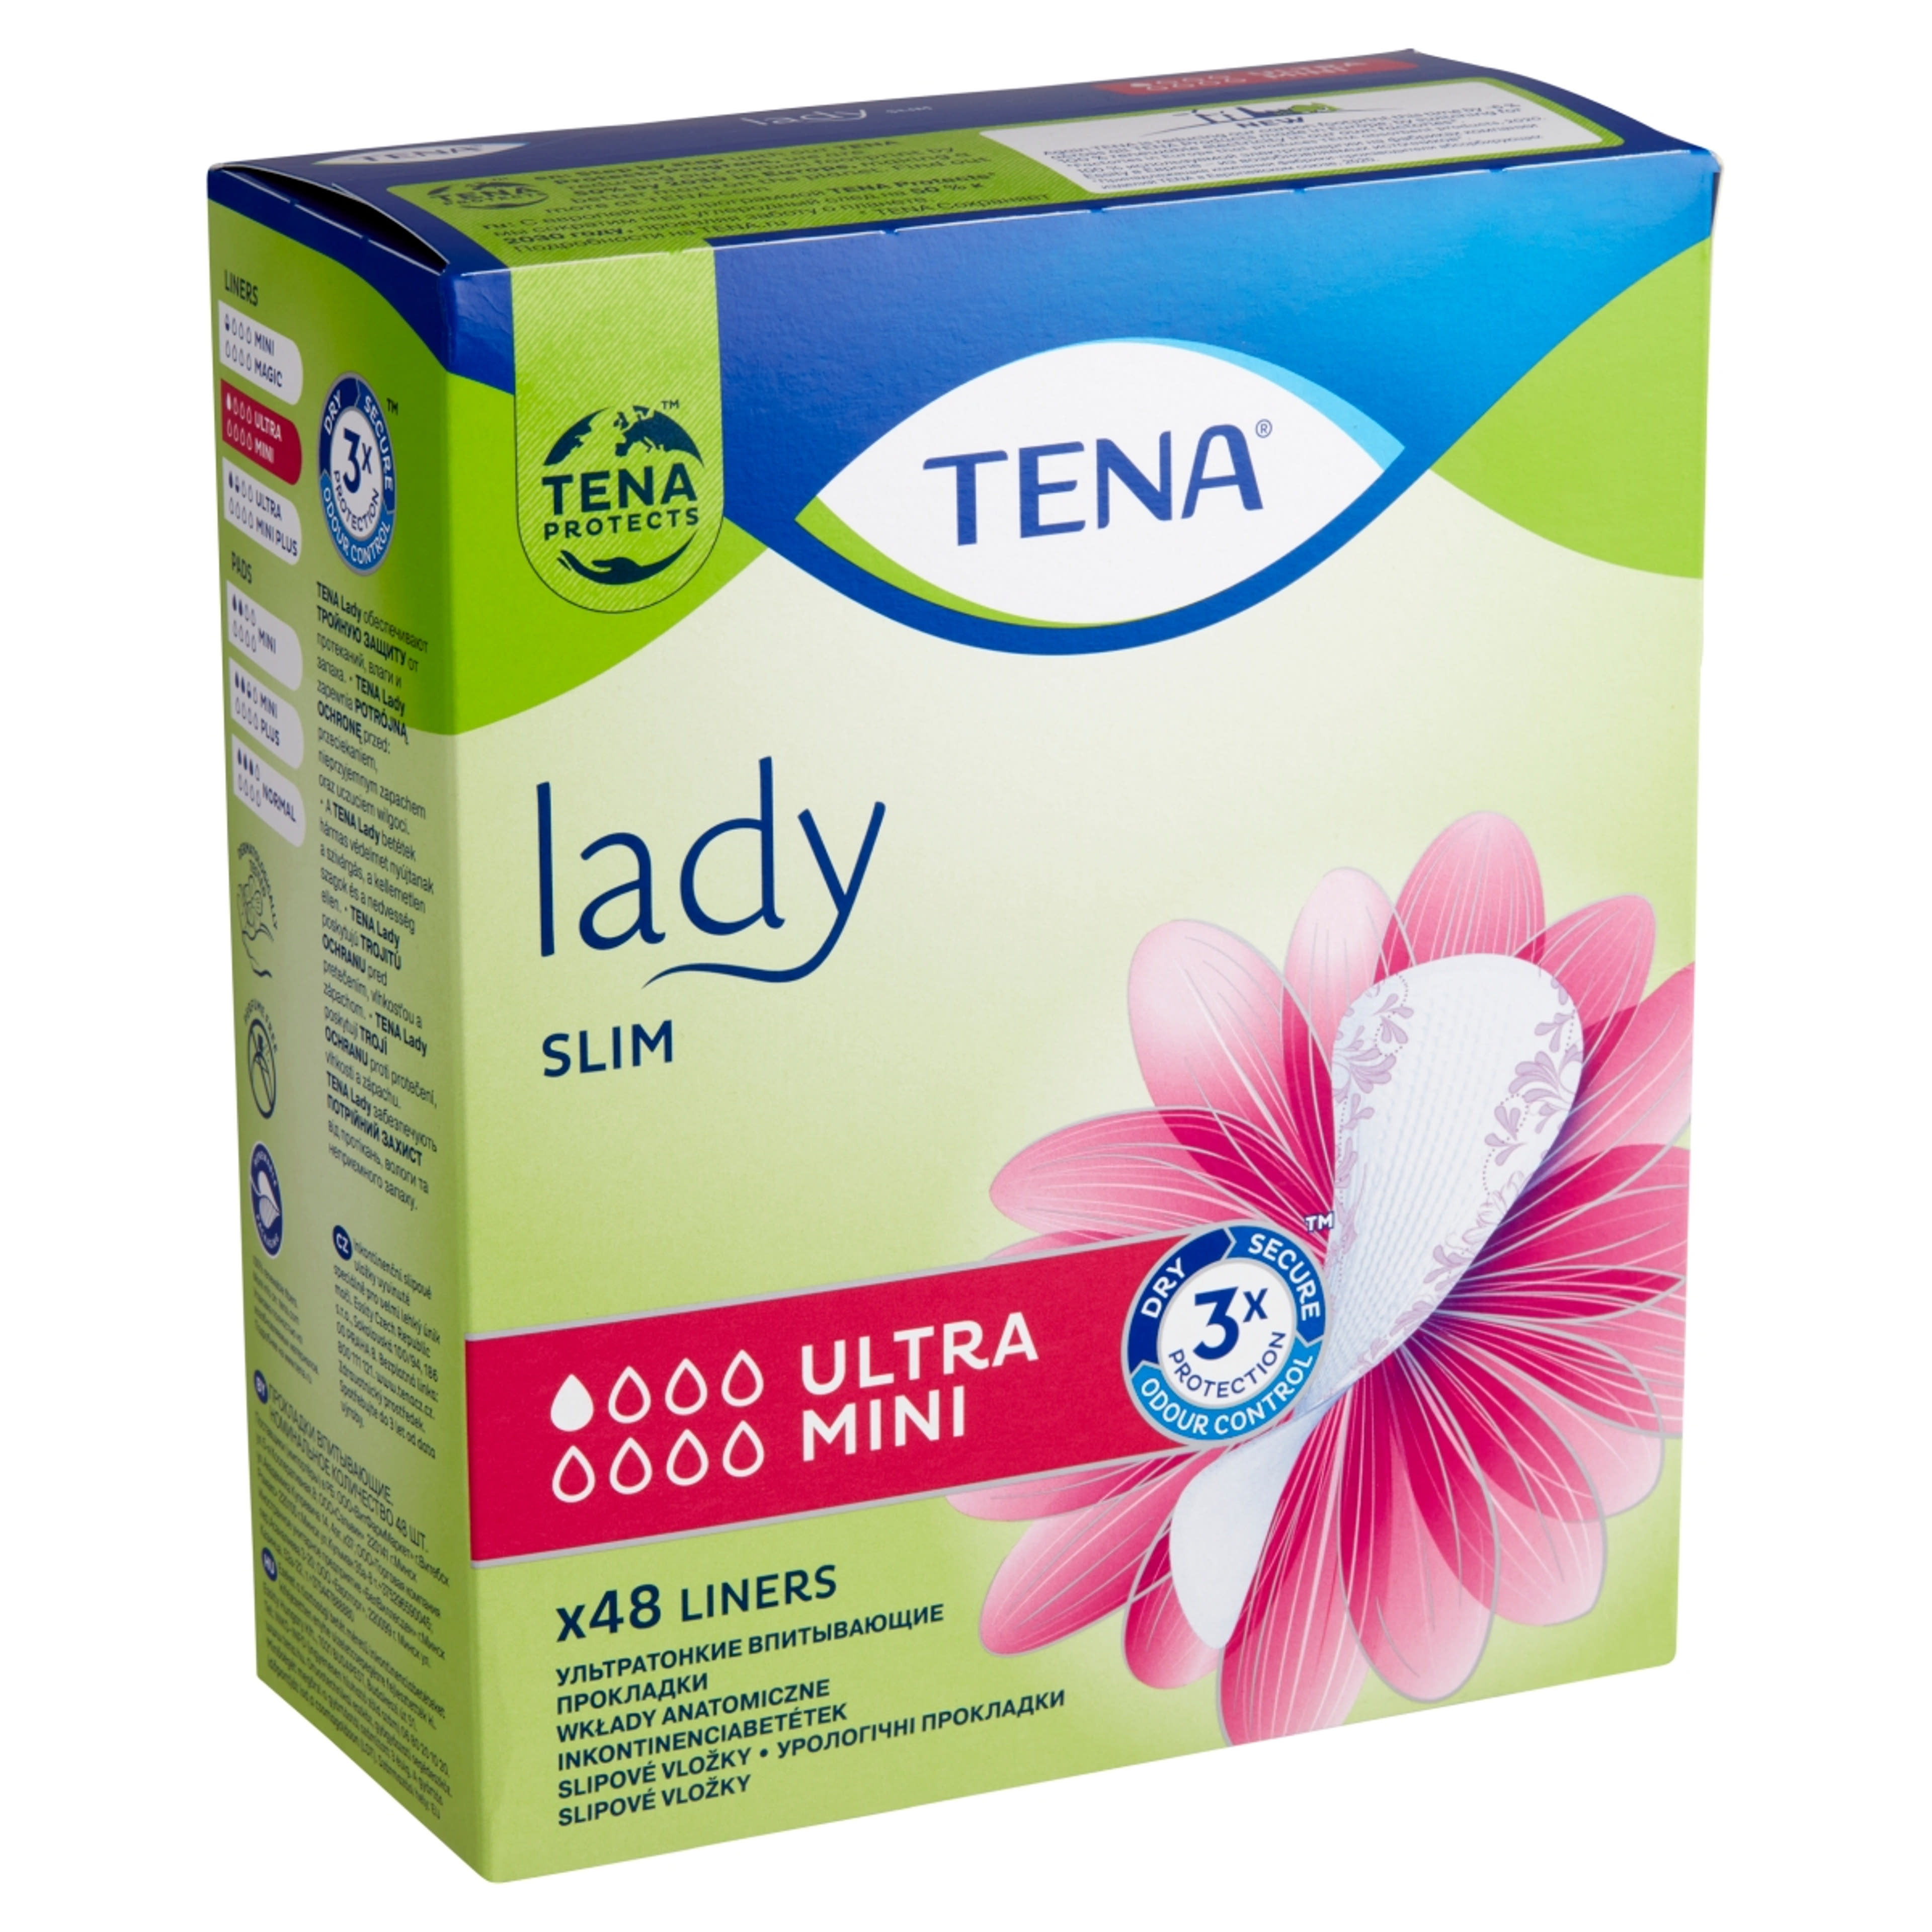 Tena Lady inkontinencia betét ultra mini slim - 1 db-2